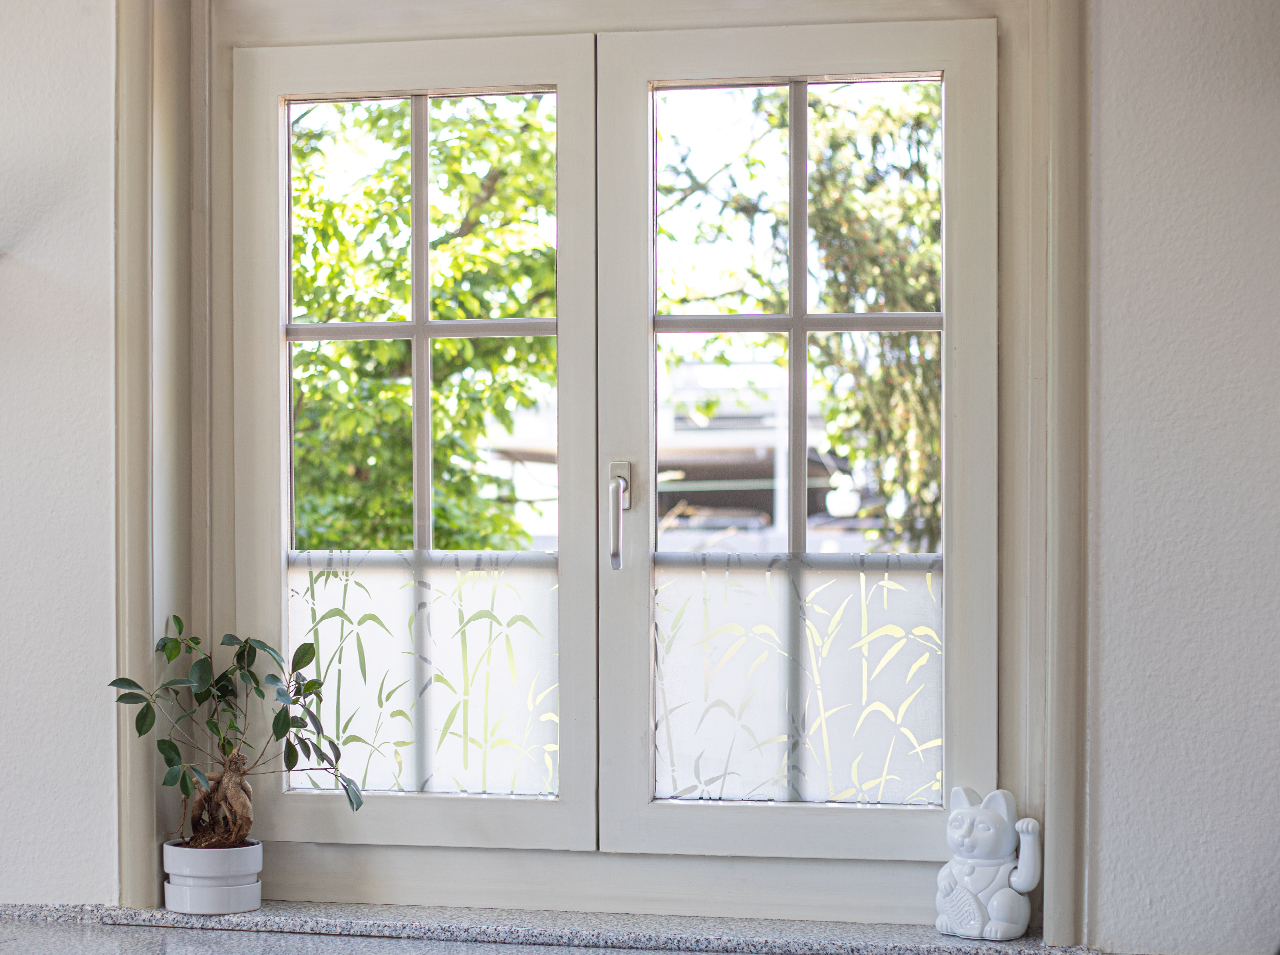 Okna oklejone nieprzezroczystą folią okienną z motywem bambusa zapewnią Ci większą prywatność.